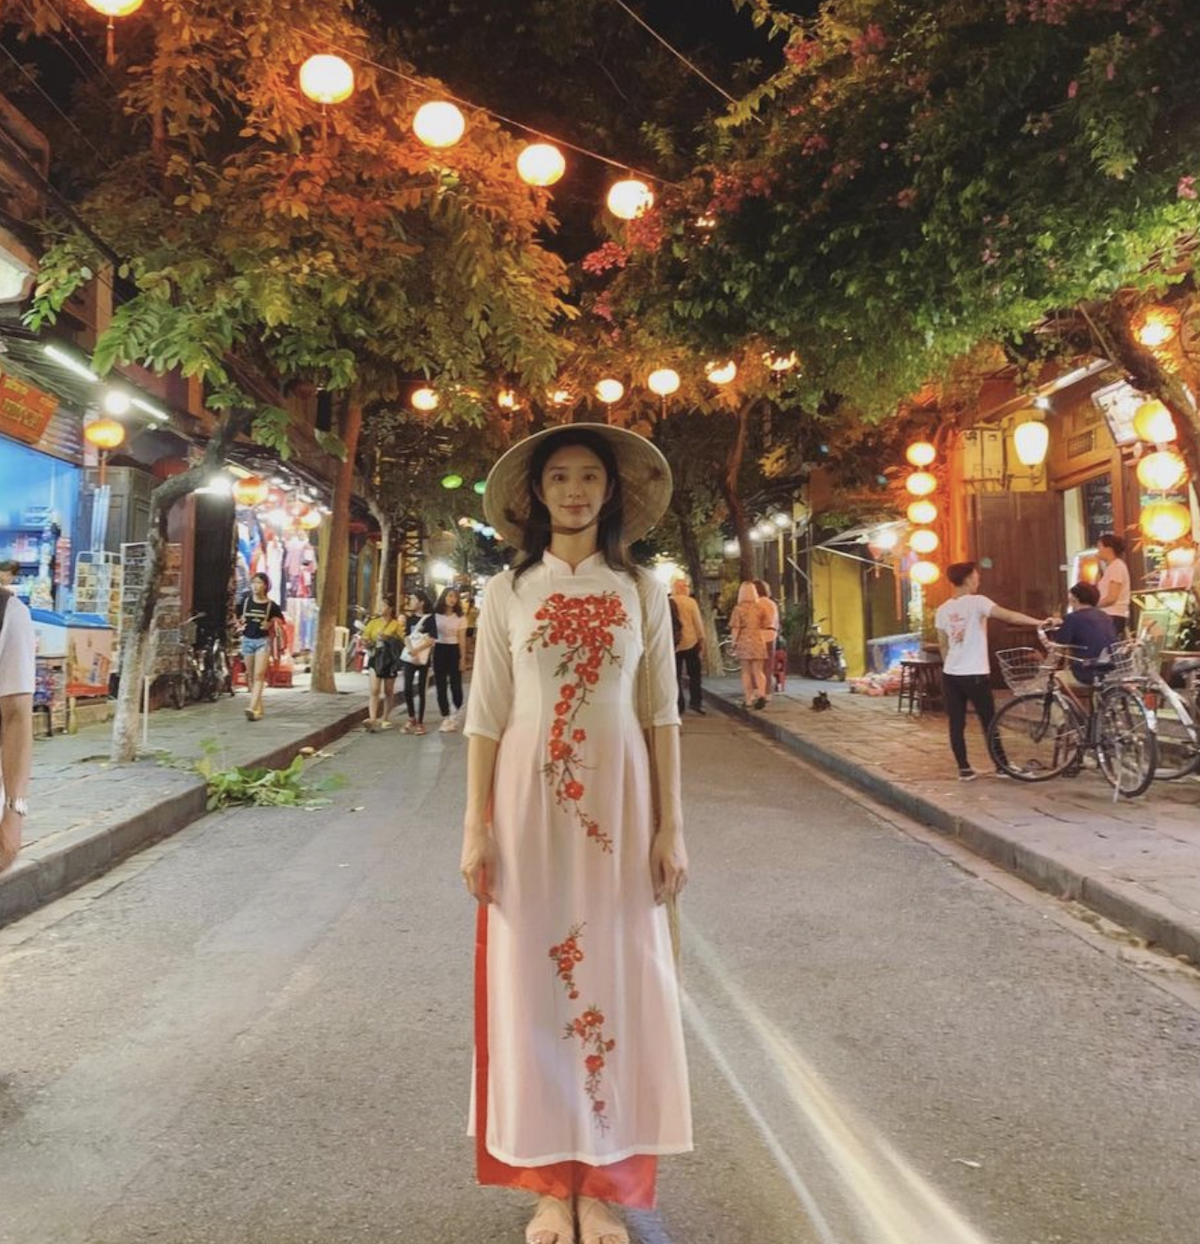 2024 là năm đột phá của Lee Joo Bin với tác phẩm truyền hình Nữ hoàng nước mắt và phim điện ảnh Vây hãm: Kẻ trừng phạt. Diễn xuất đầy chân thật và vẻ đẹp trong trẻo, vóc dáng mảnh khảnh giúp cô được công chúng biết đến nhiều hơn. Năm 2018, Lee Joo Bin từng đến Việt Nam du lịch và khoe ảnh diện áo dài duyên dáng